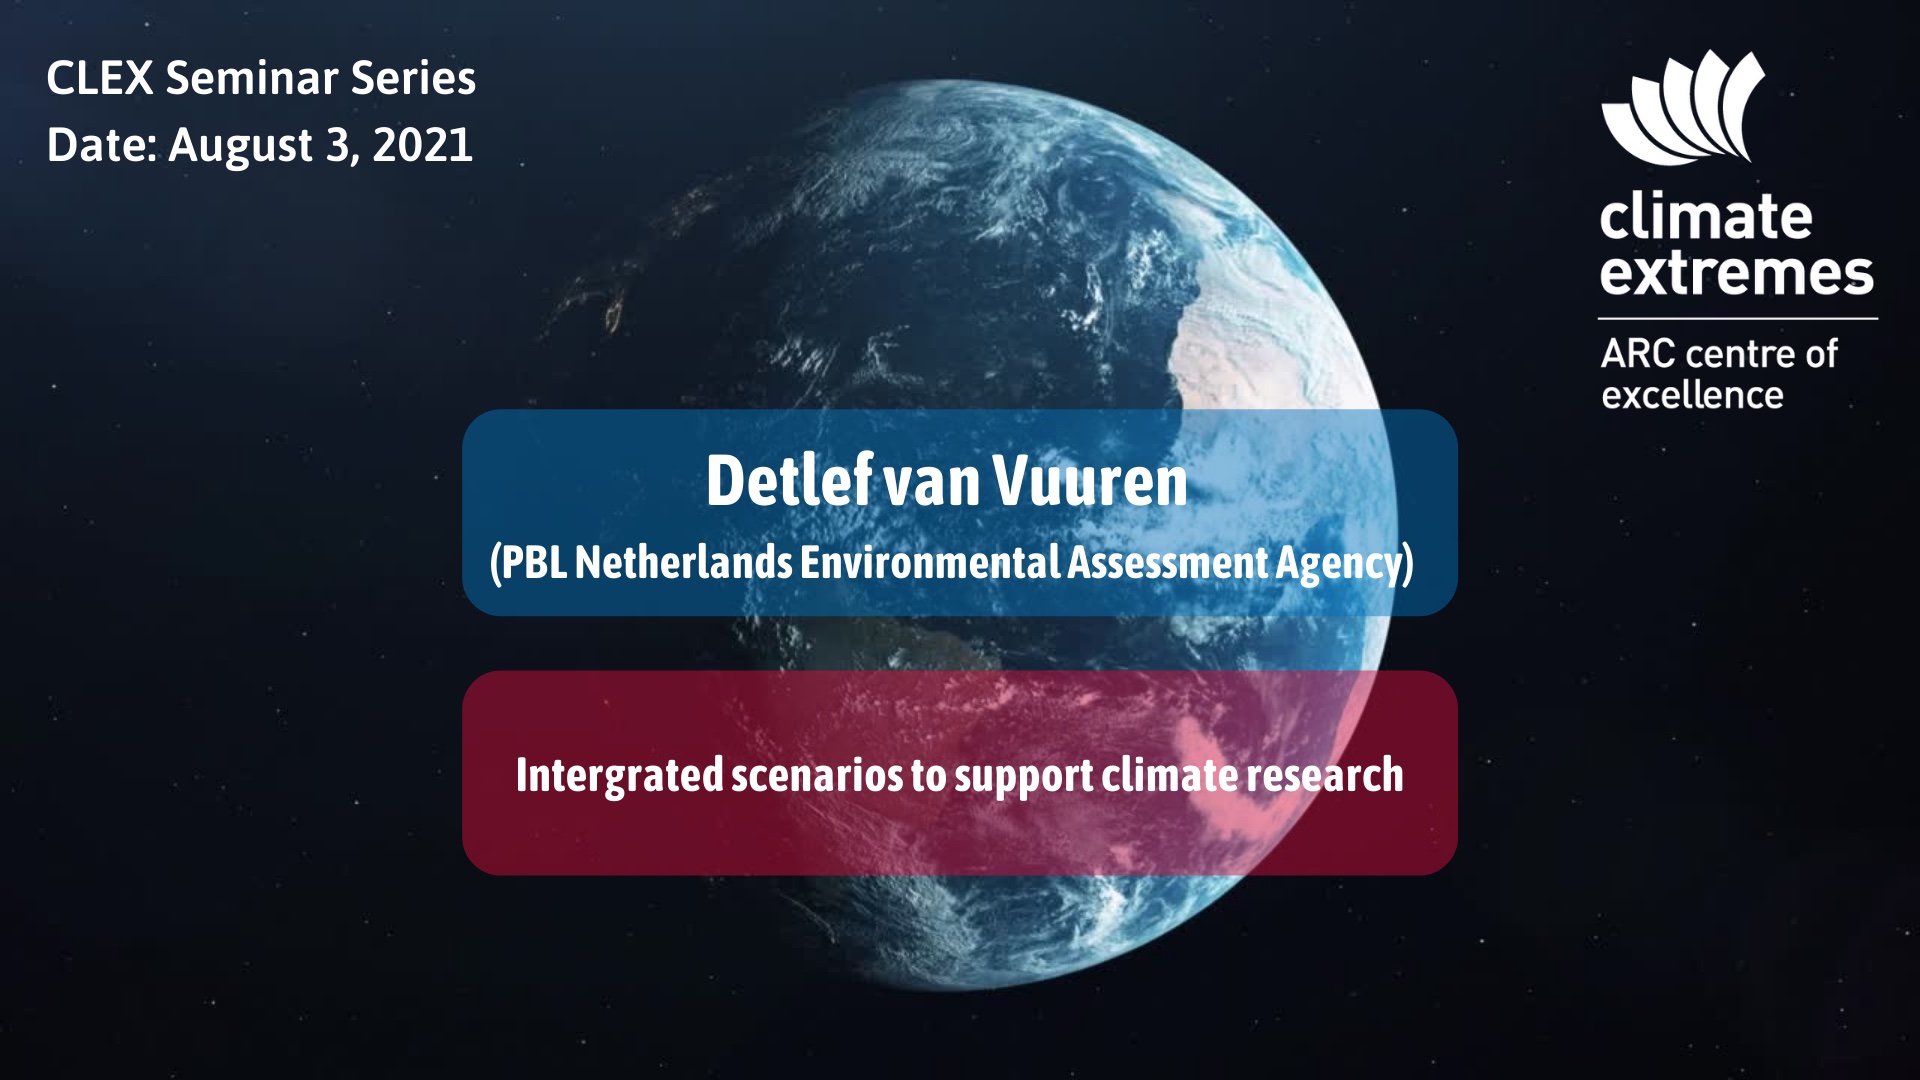 CLEX Seminar Series: Detlef van Vuuren